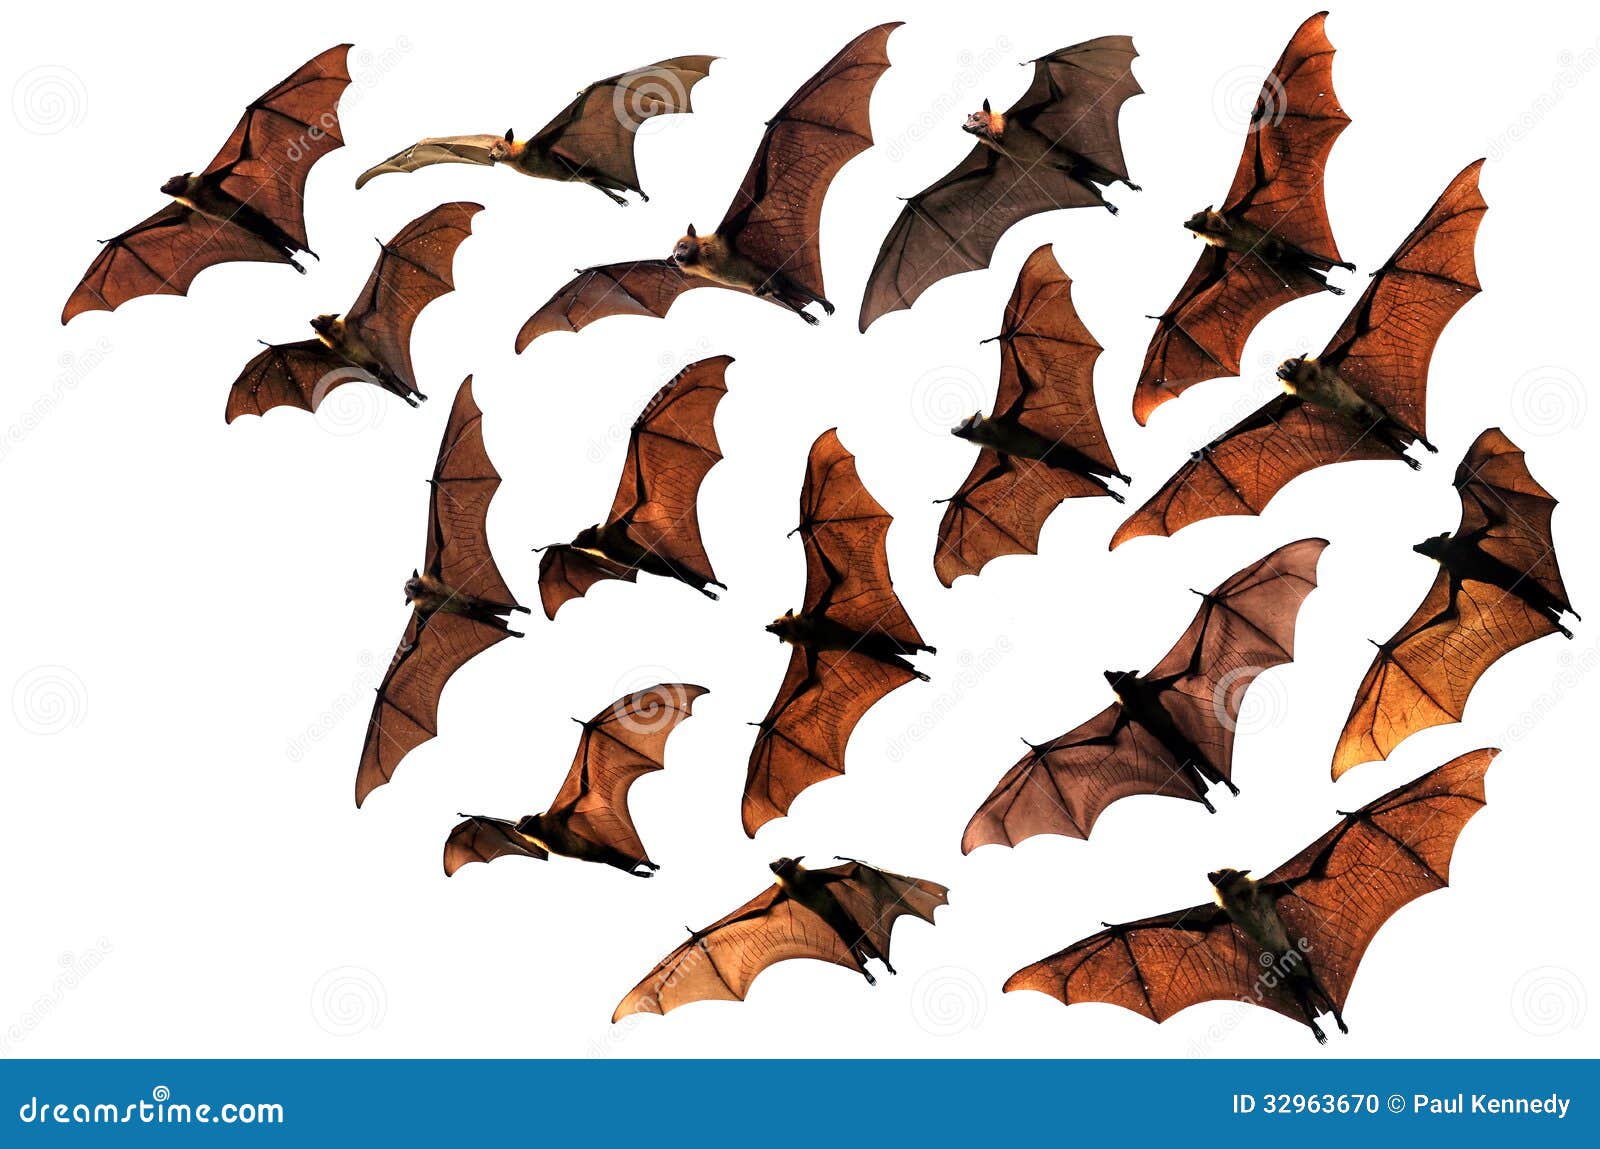 flying fox fruit bats in the sky